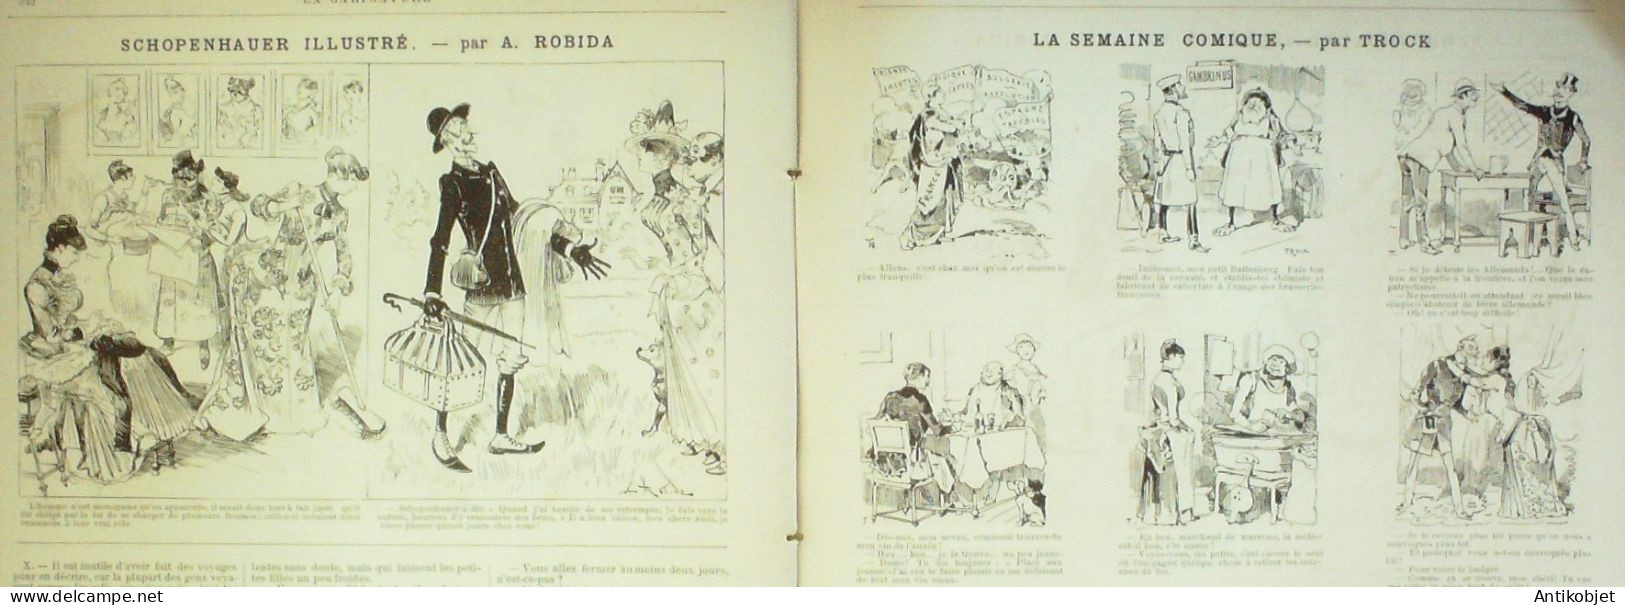 La Caricature 1886 N°355 L'amour En Discipline Caran D'Ache Succi Par Luque Rip Trock Robida - Zeitschriften - Vor 1900